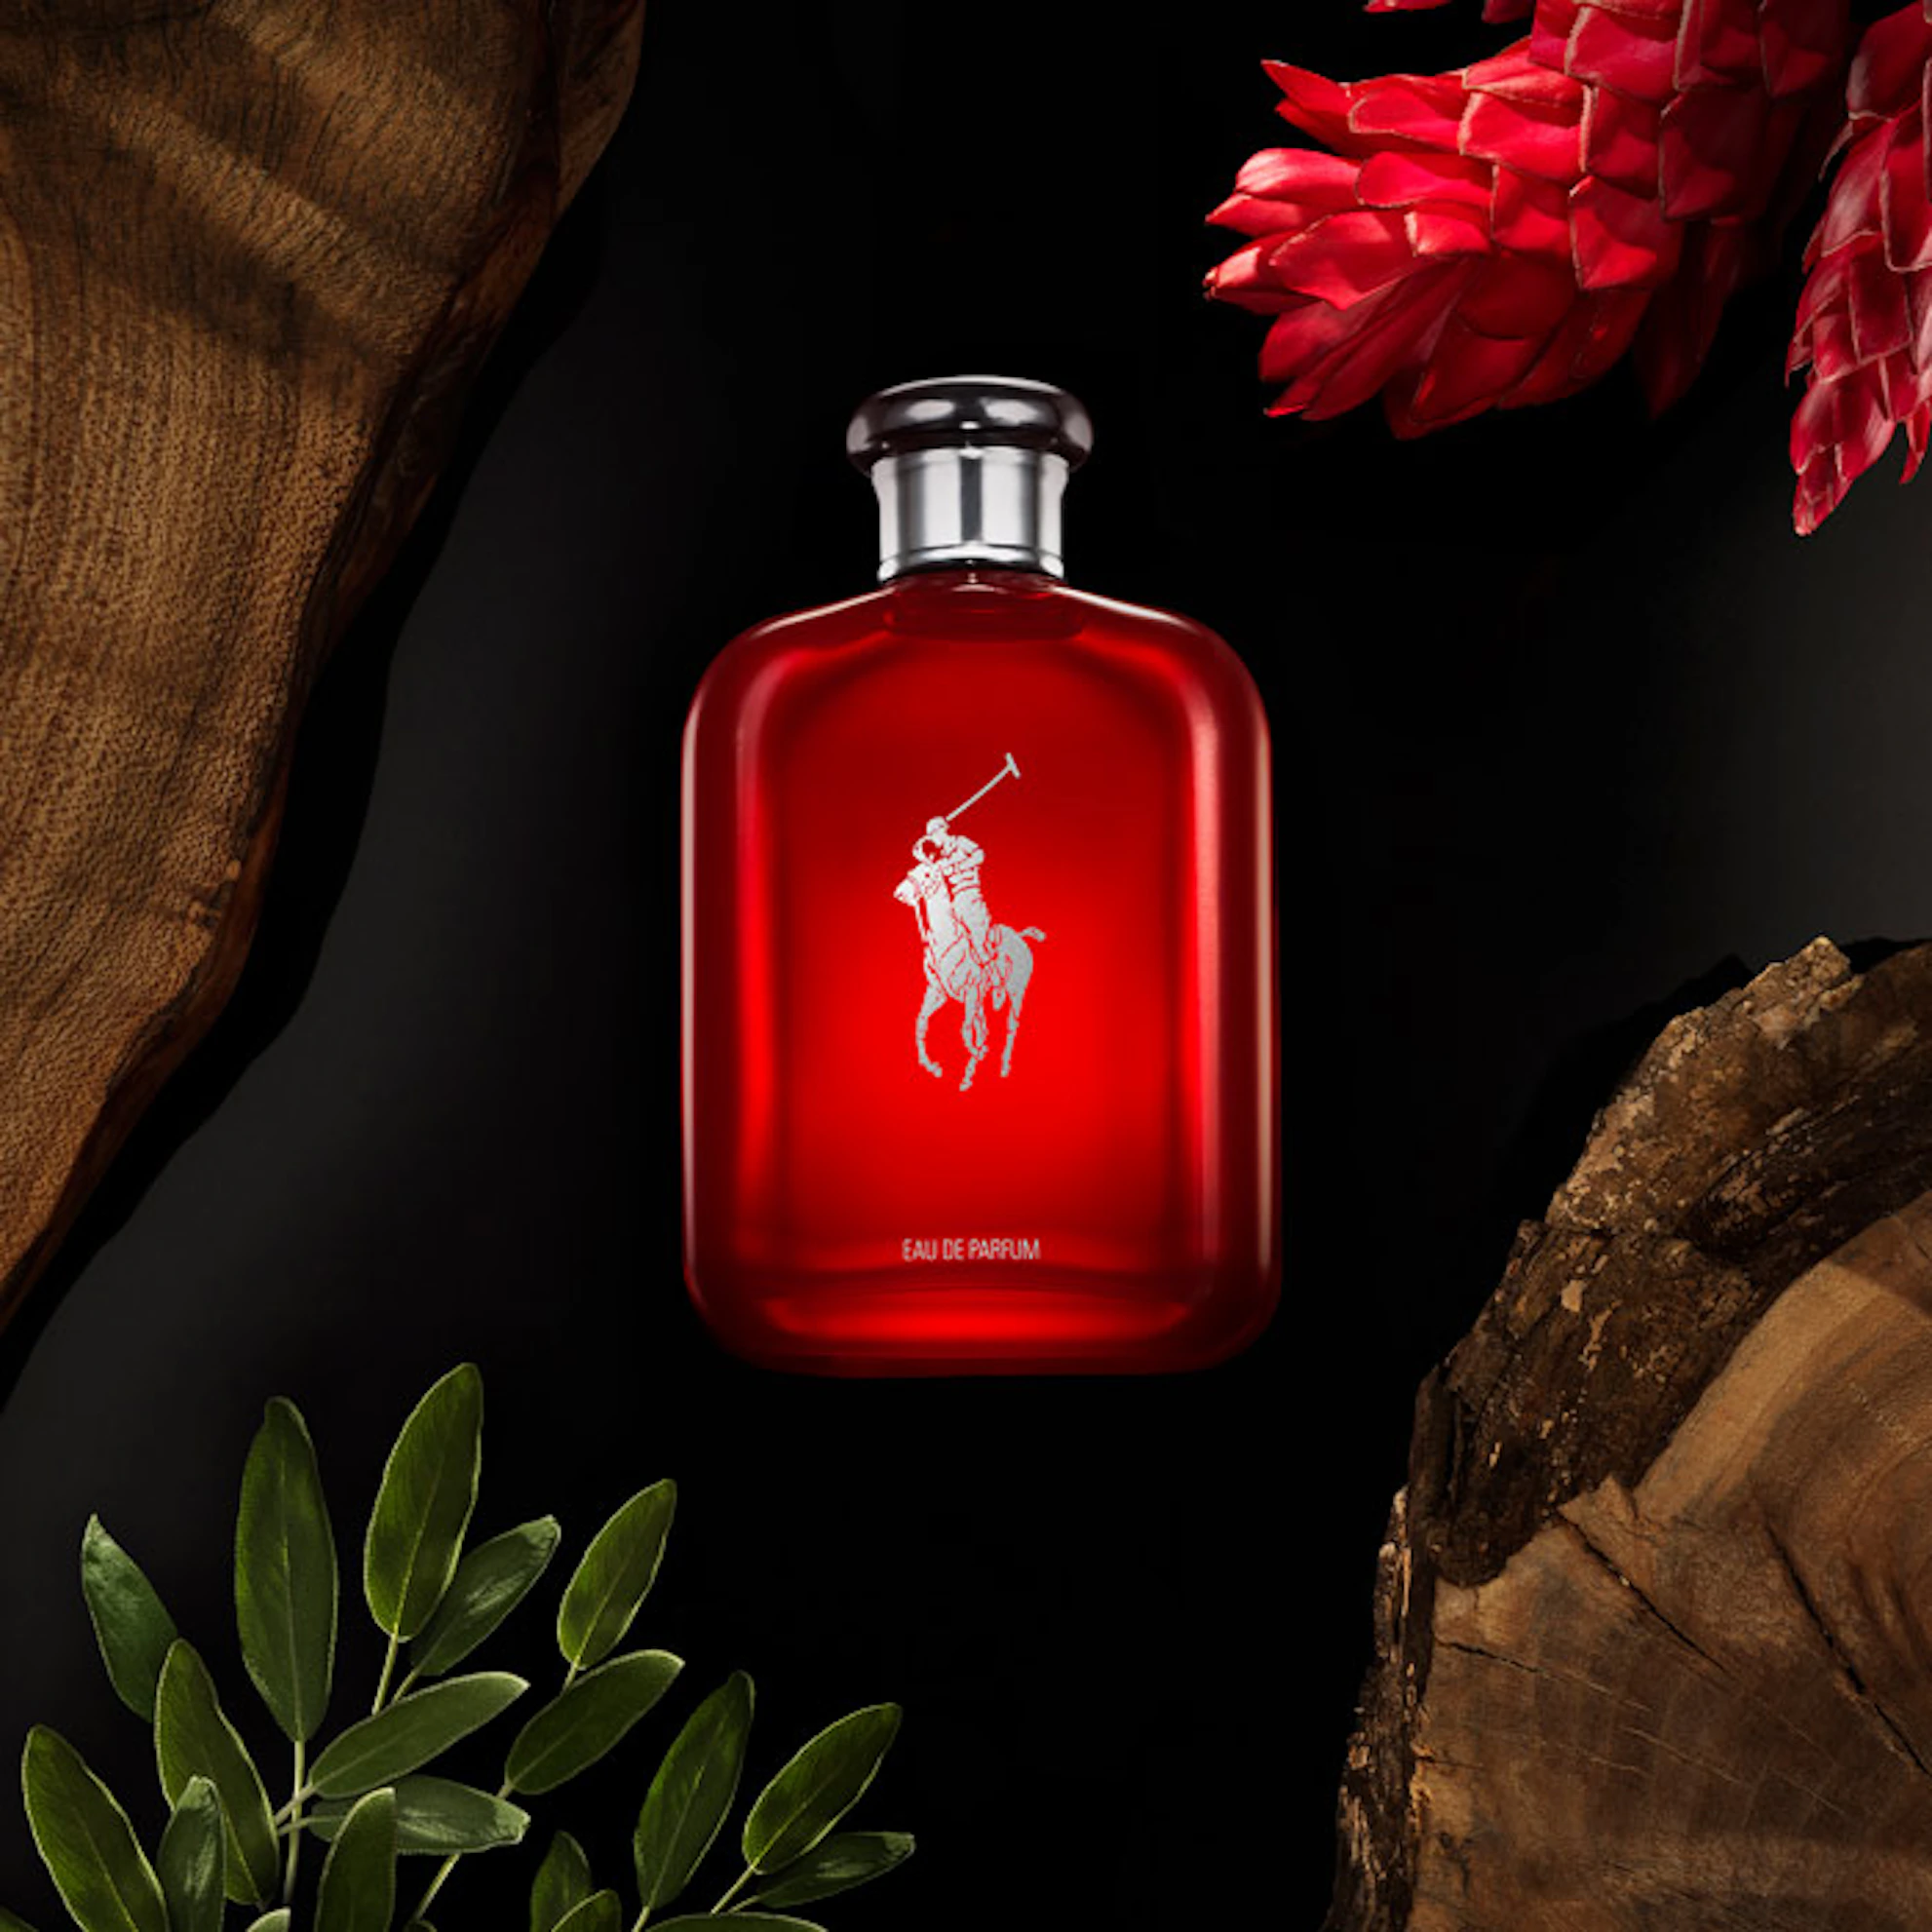 Ralph Lauren Polo Red Eau de Parfum| men's fragrance| The Fragrance ...